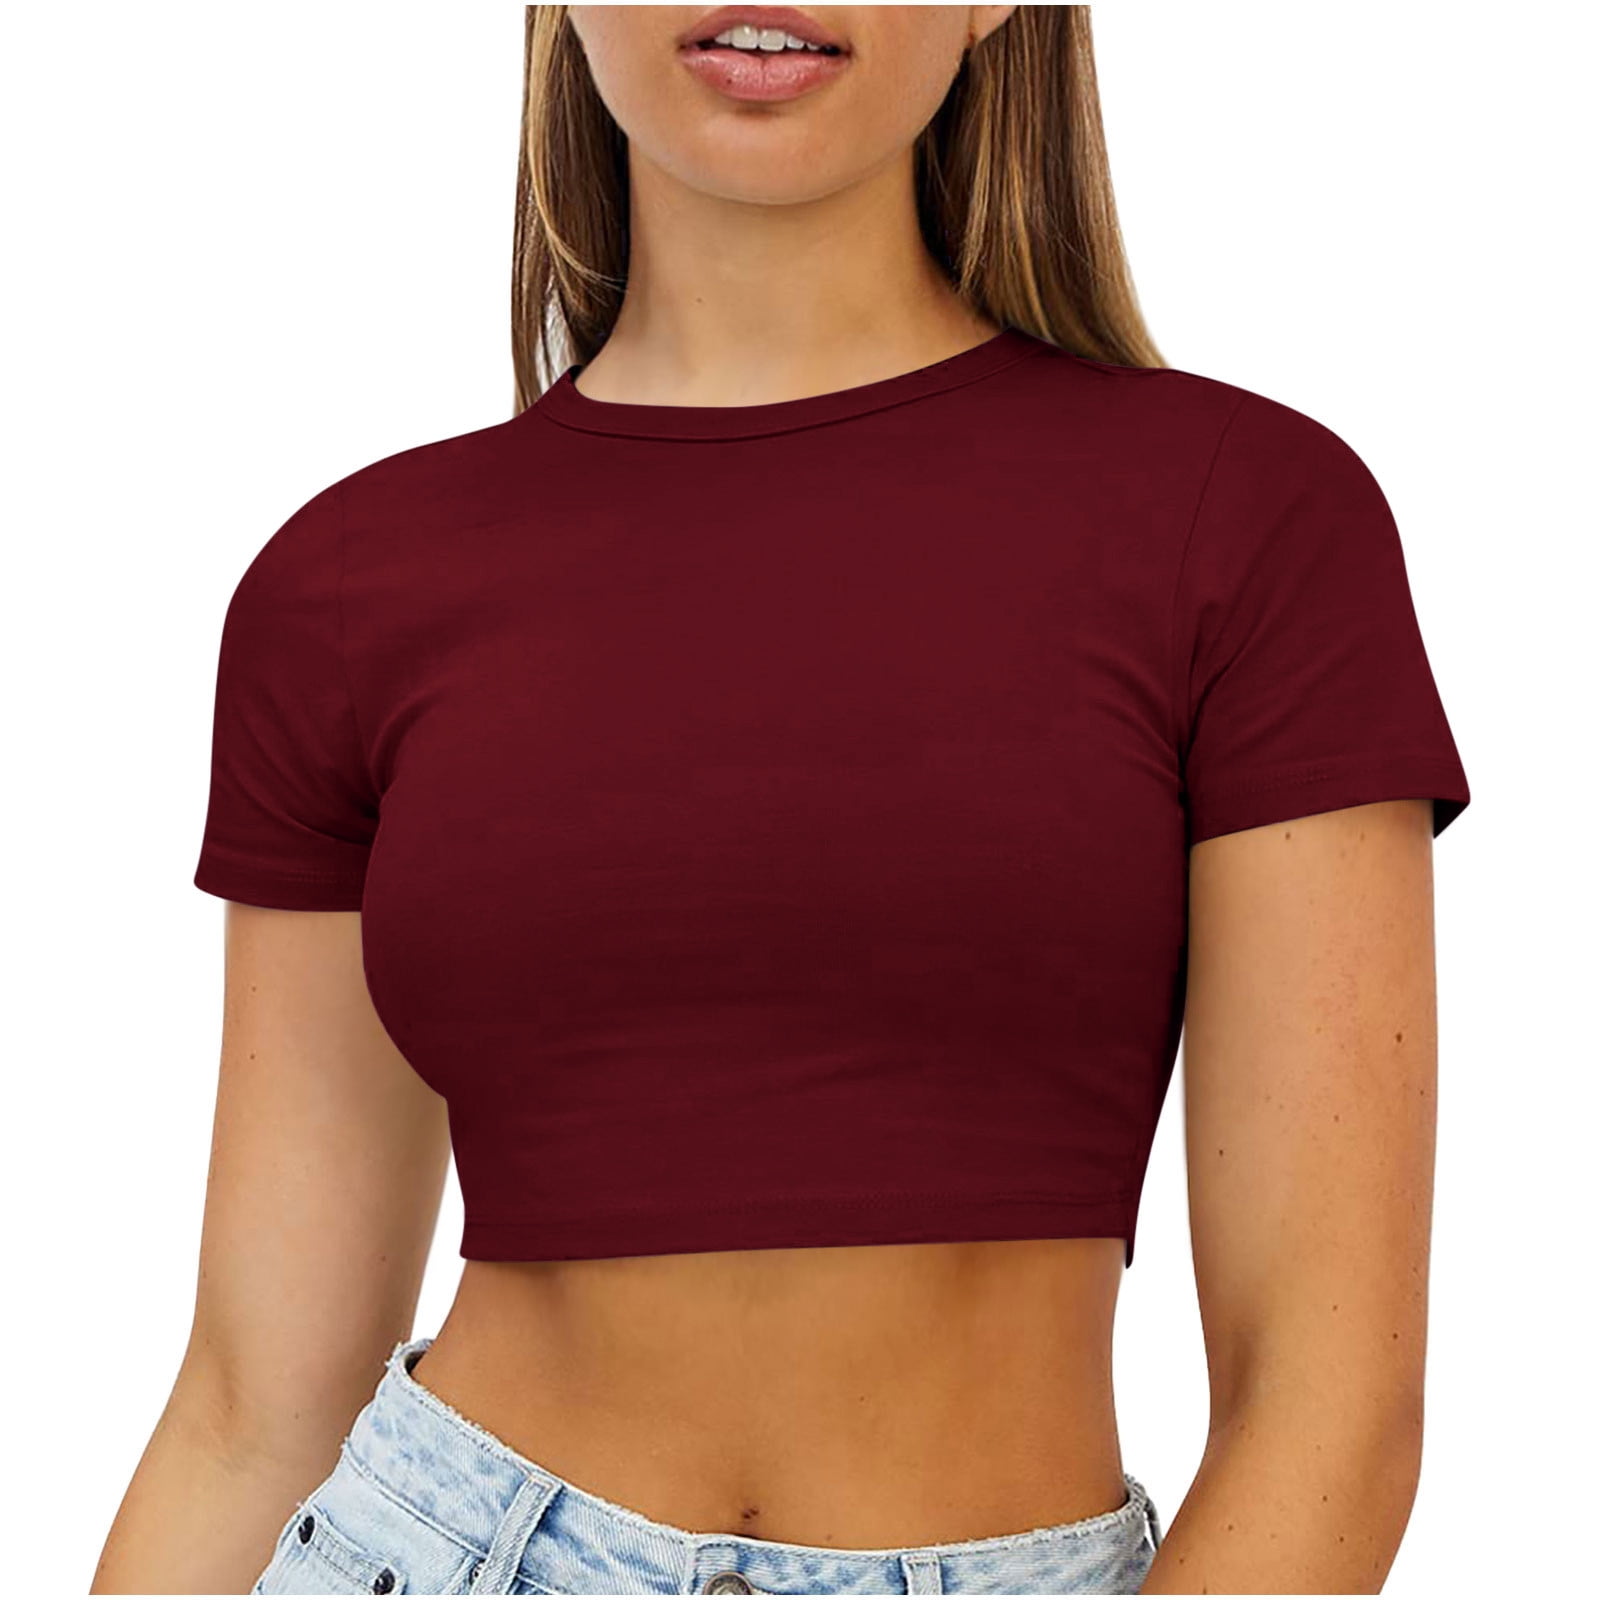 Sexy Women's No Bra Club Cotton Short Sleeve Crop Top T-Shirt Summer Tee  Blouse 